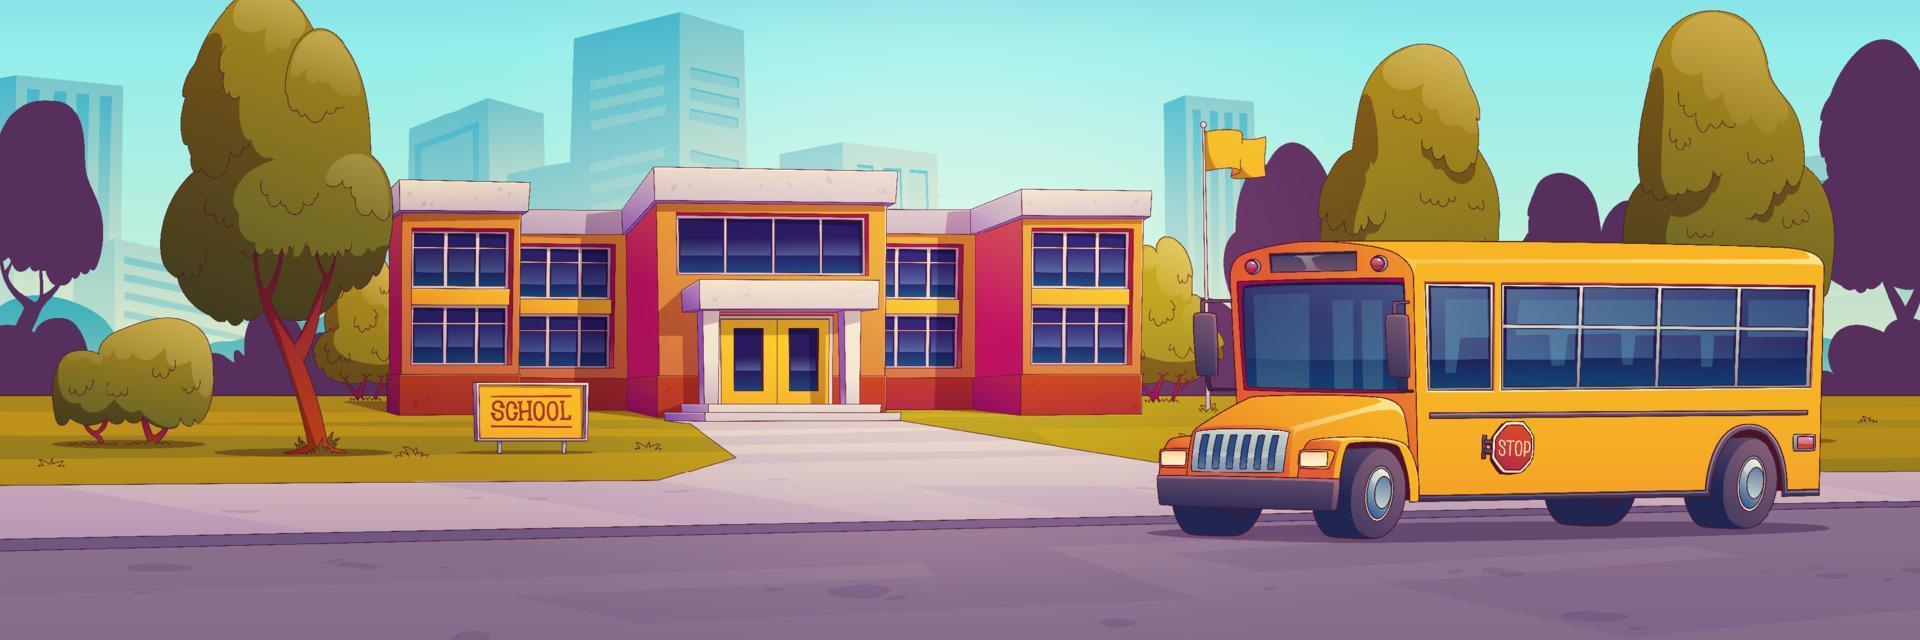 stad straat met school- gebouw en geel bus vector